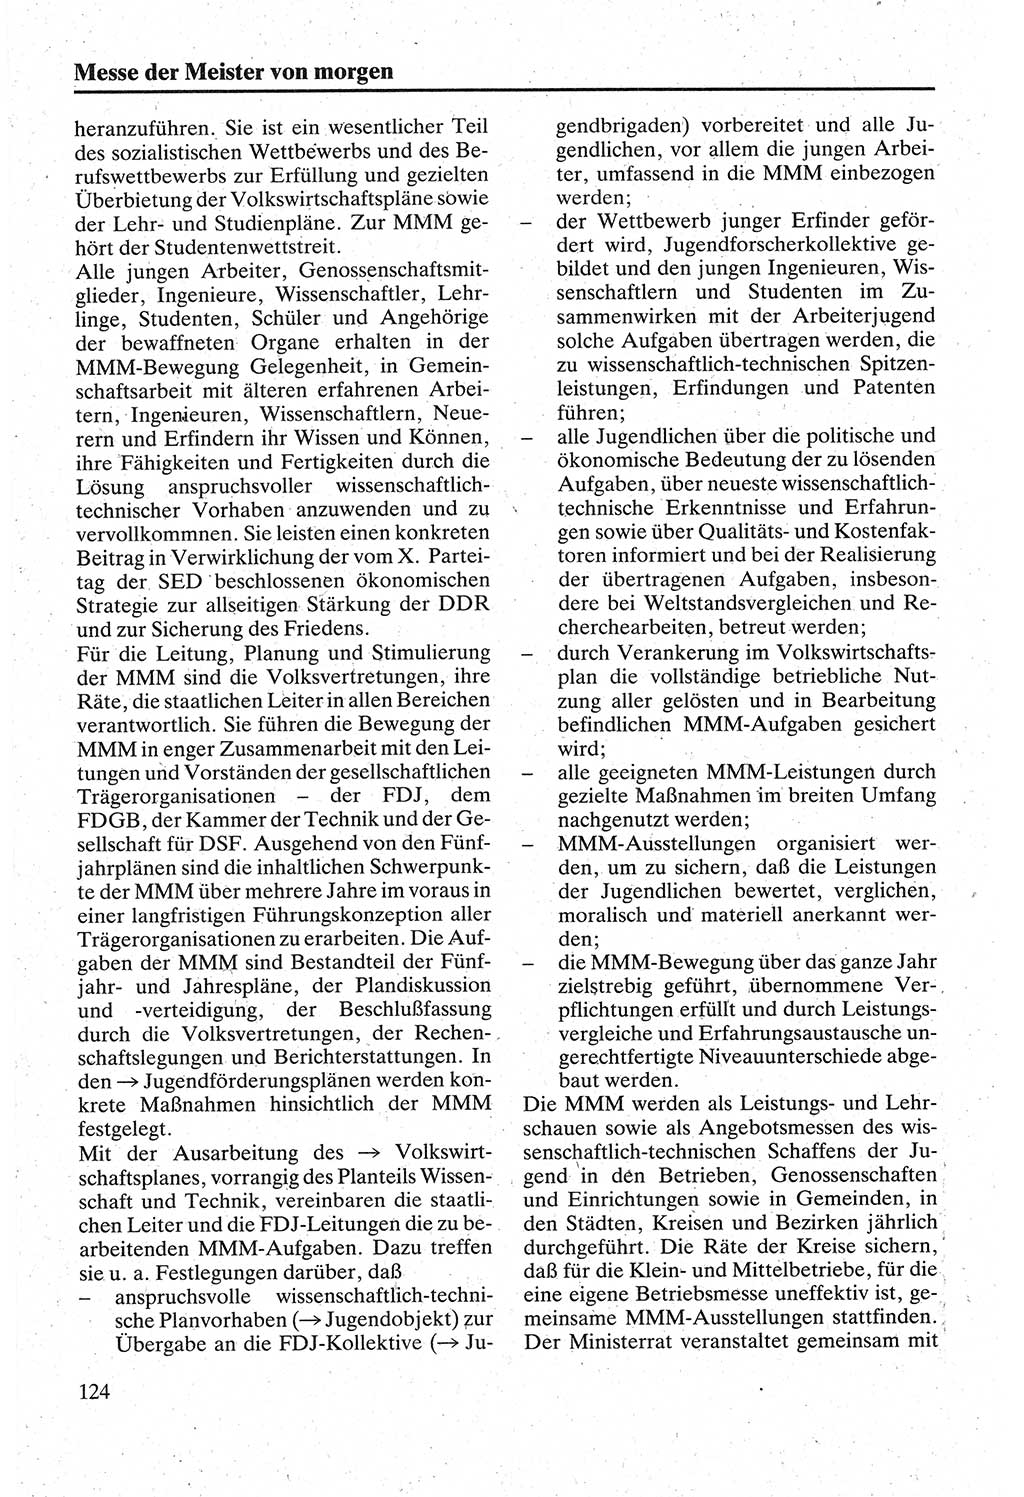 Handbuch für den Abgeordneten [Deutsche Demokratische Republik (DDR)] 1984, Seite 124 (Hb. Abg. DDR 1984, S. 124)